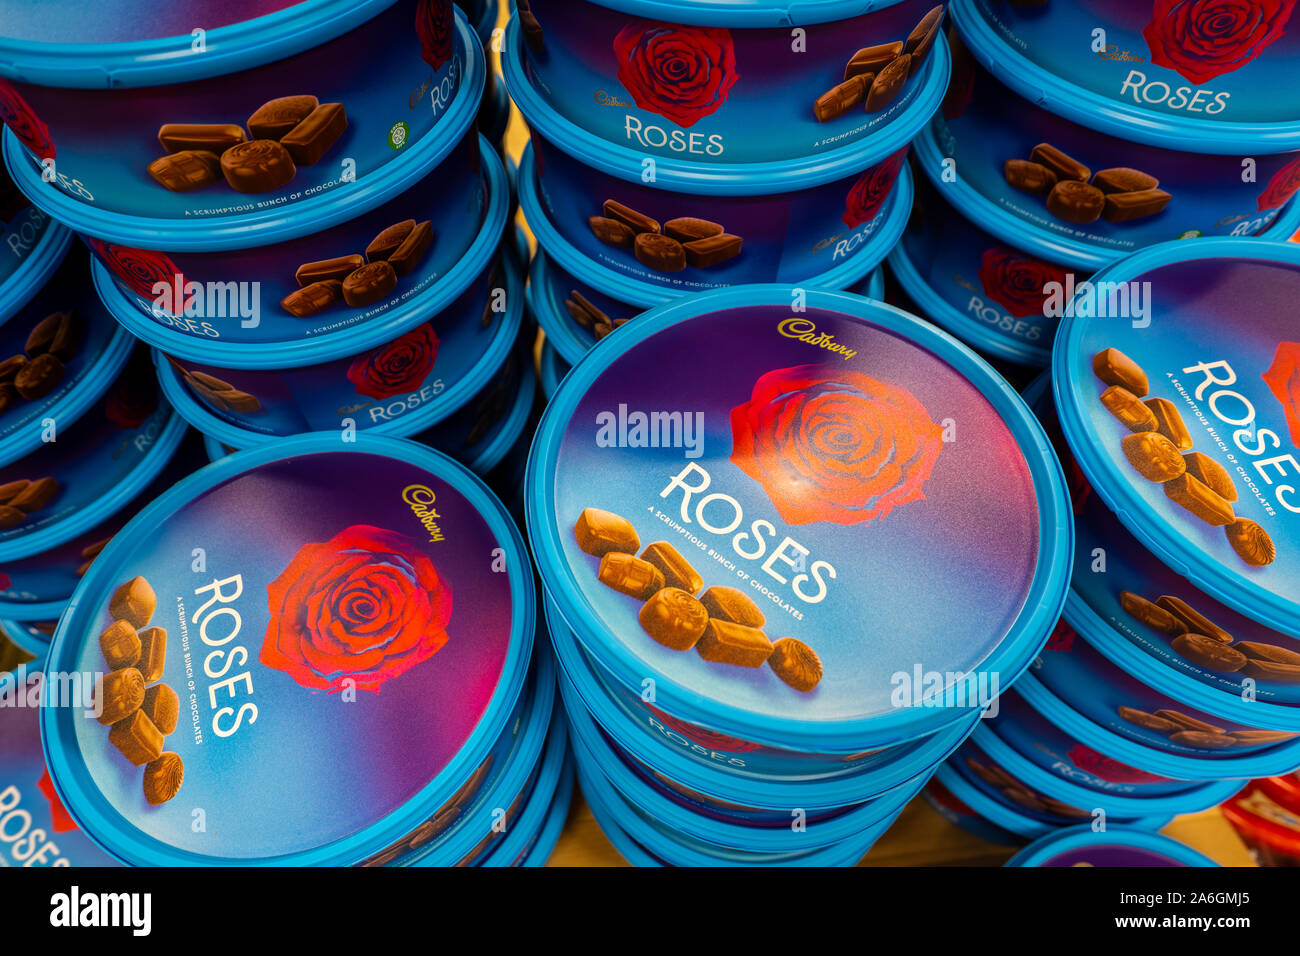 Bañeras, latas de chocolates Cadbury roses a la venta para Navidad en una  gran cadena de supermercados Fotografía de stock - Alamy